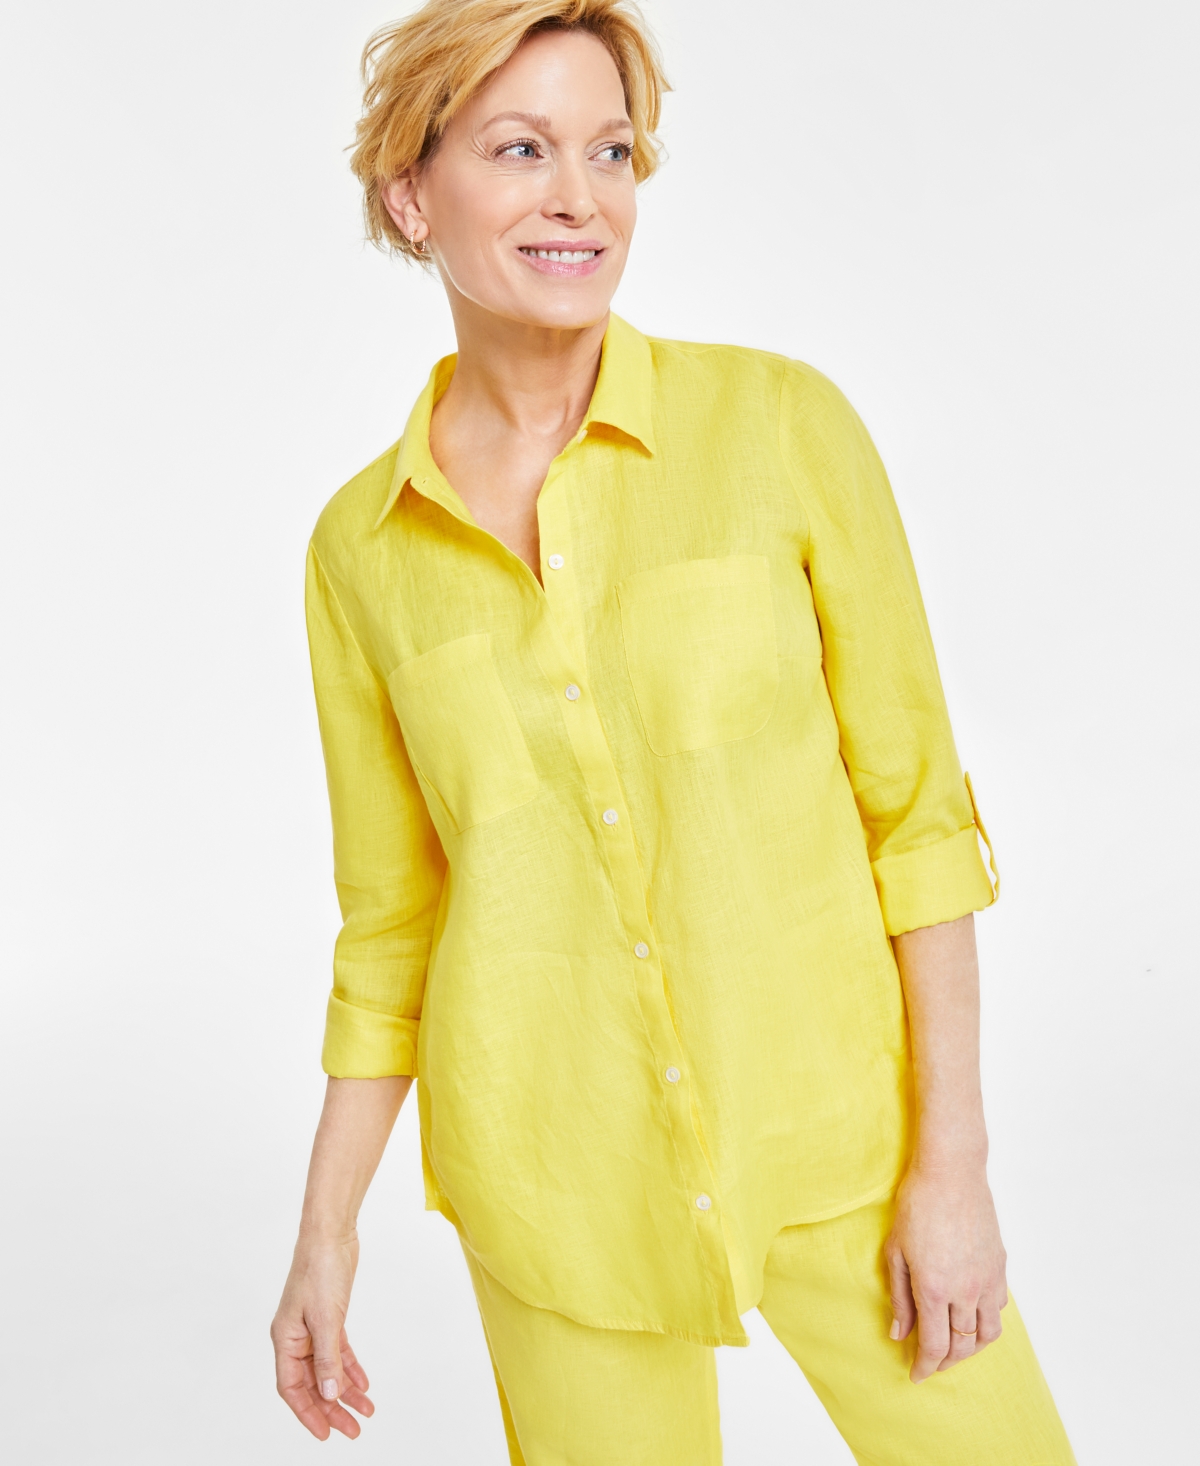 Women's 100% Linen Shirt, Created for Macy's - Light Pool Blue